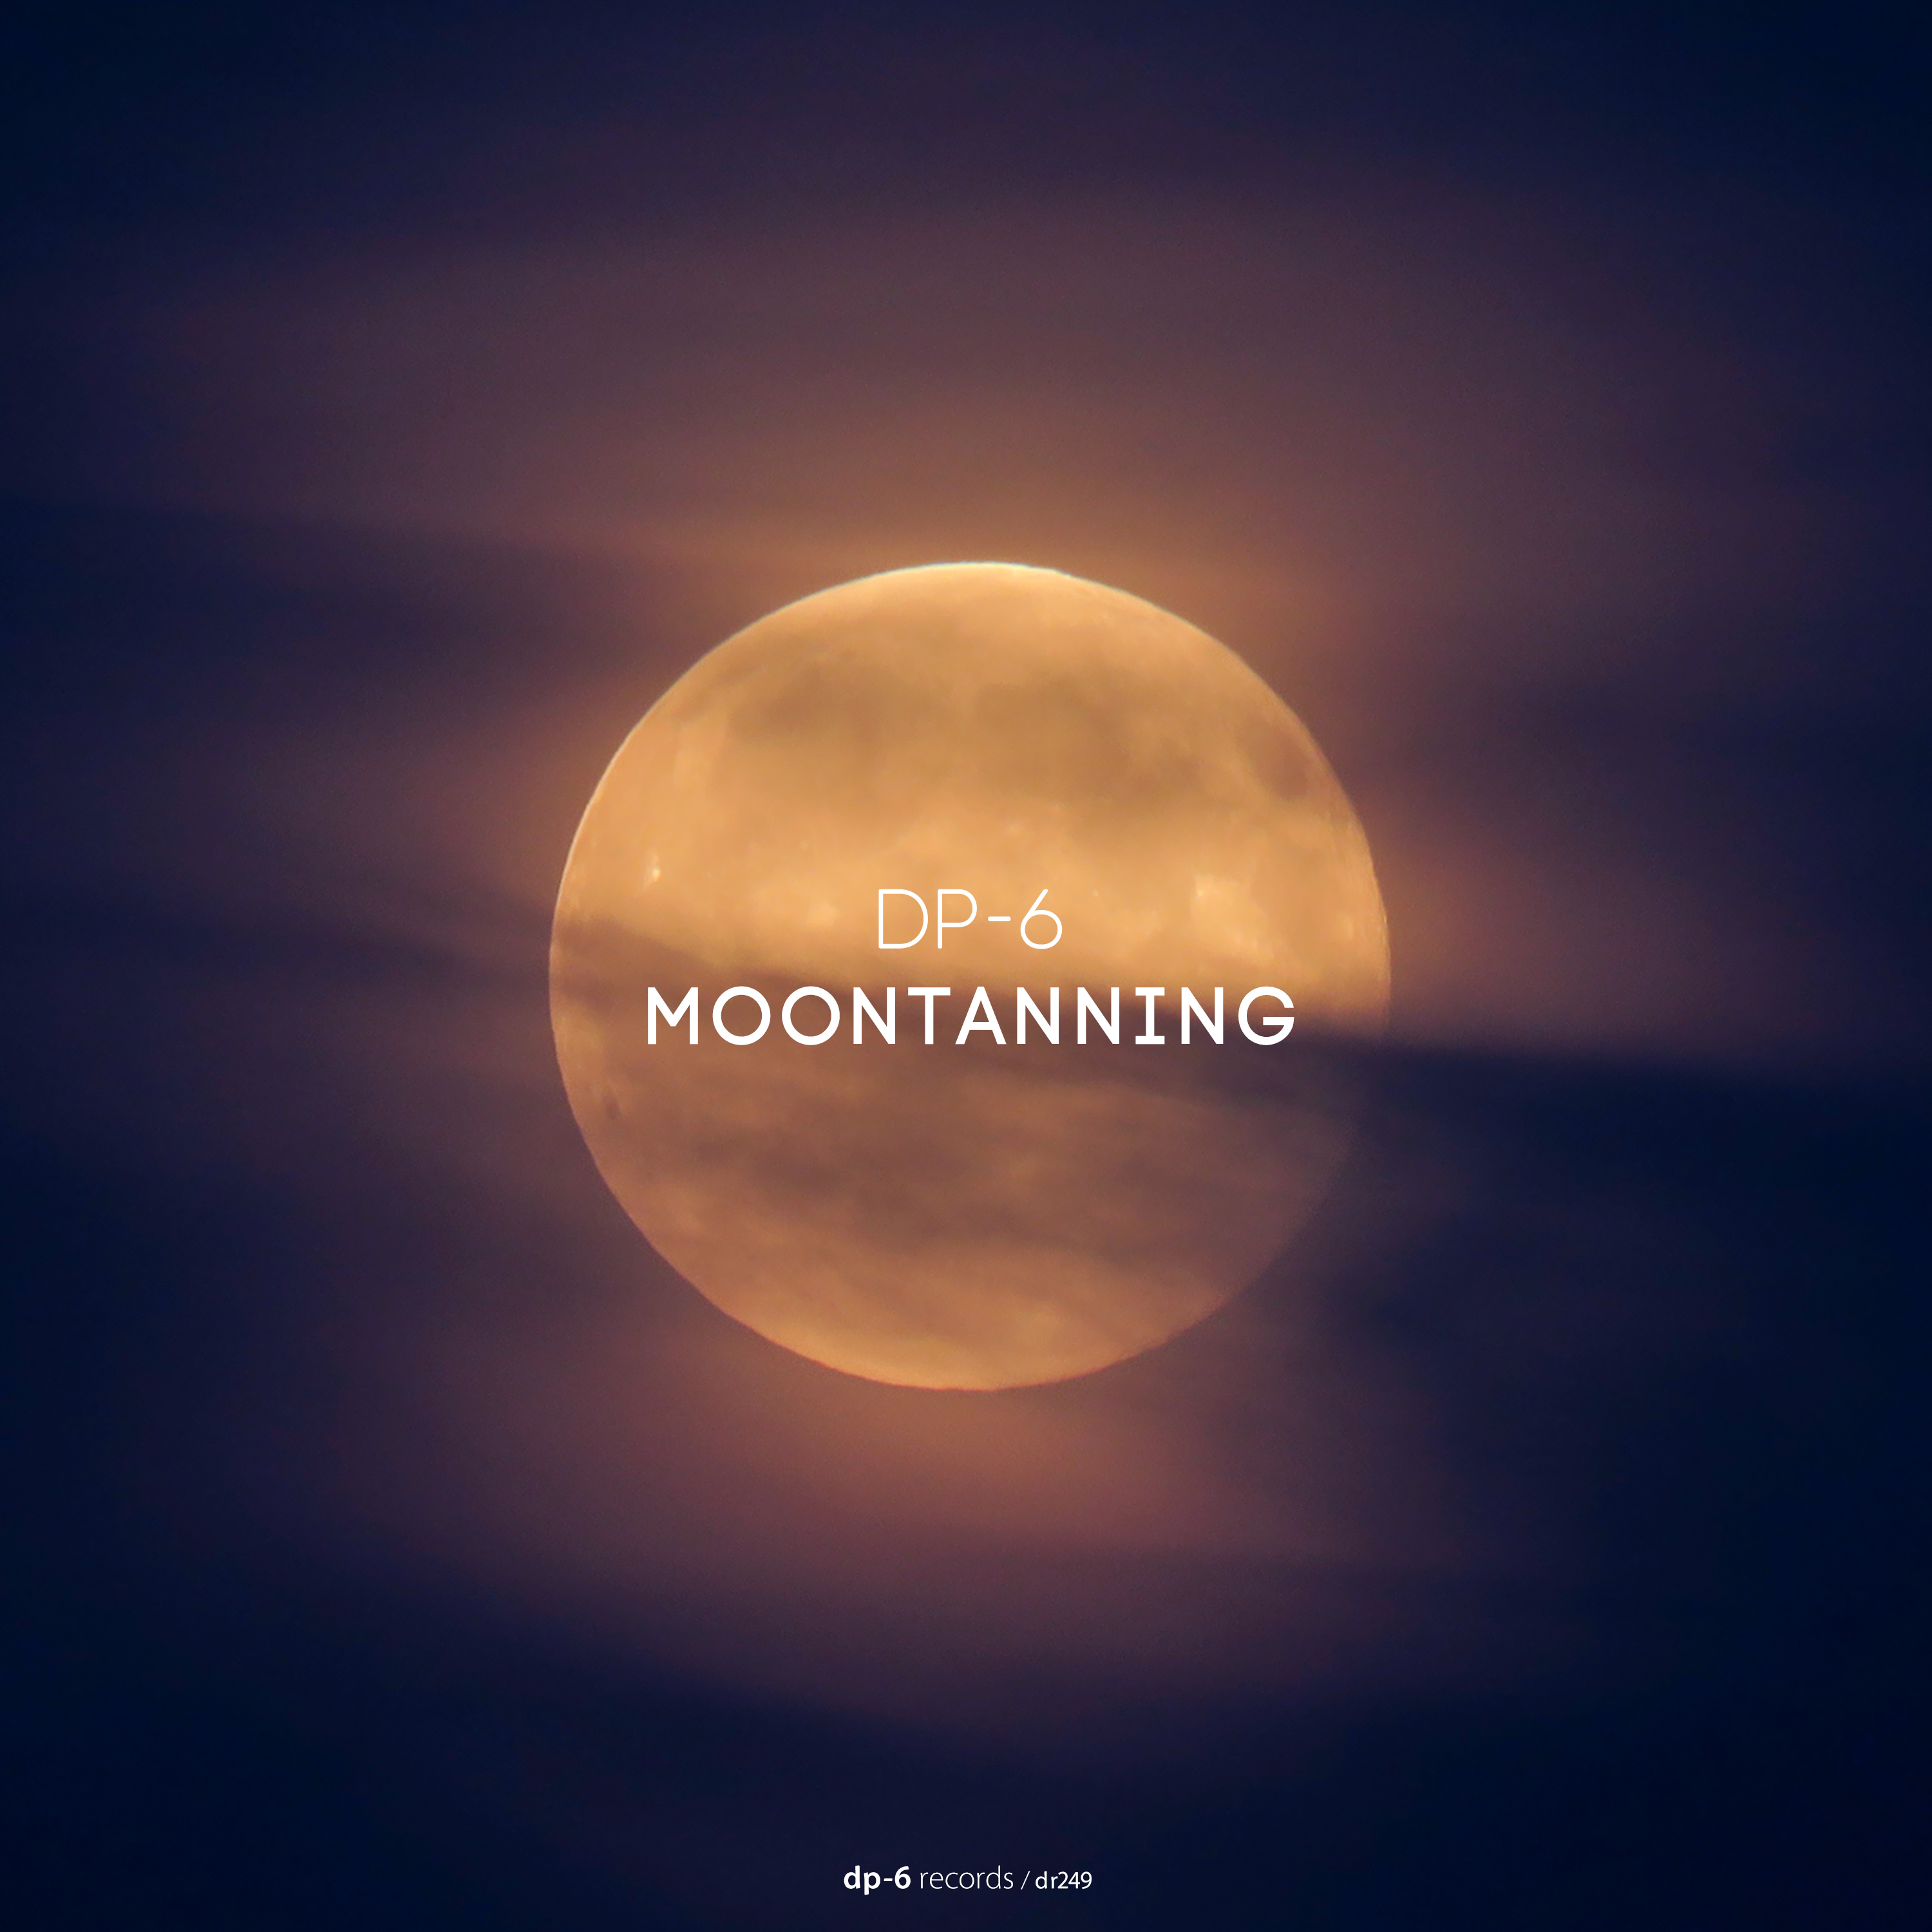 DP-6: Moontanning